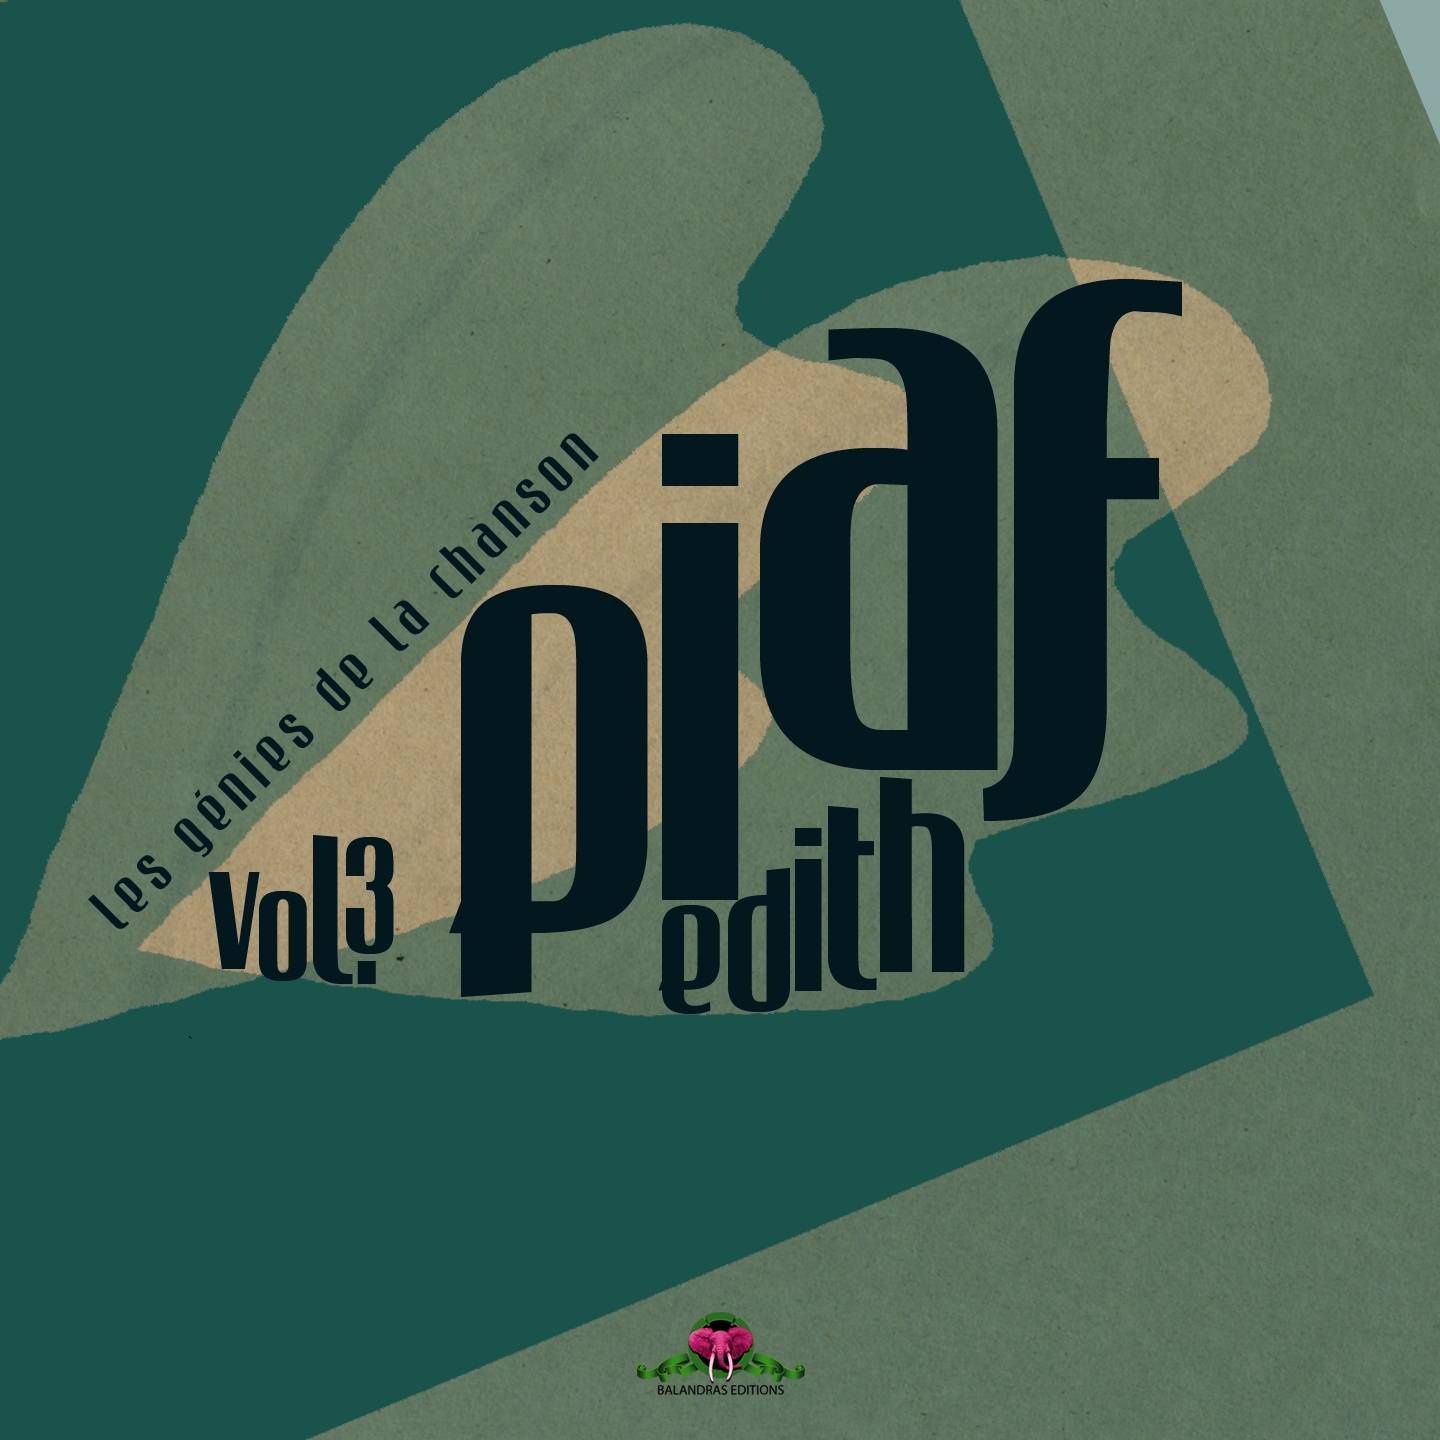 Les ge nies de la chanson, vol. 3 : Edith Piaf